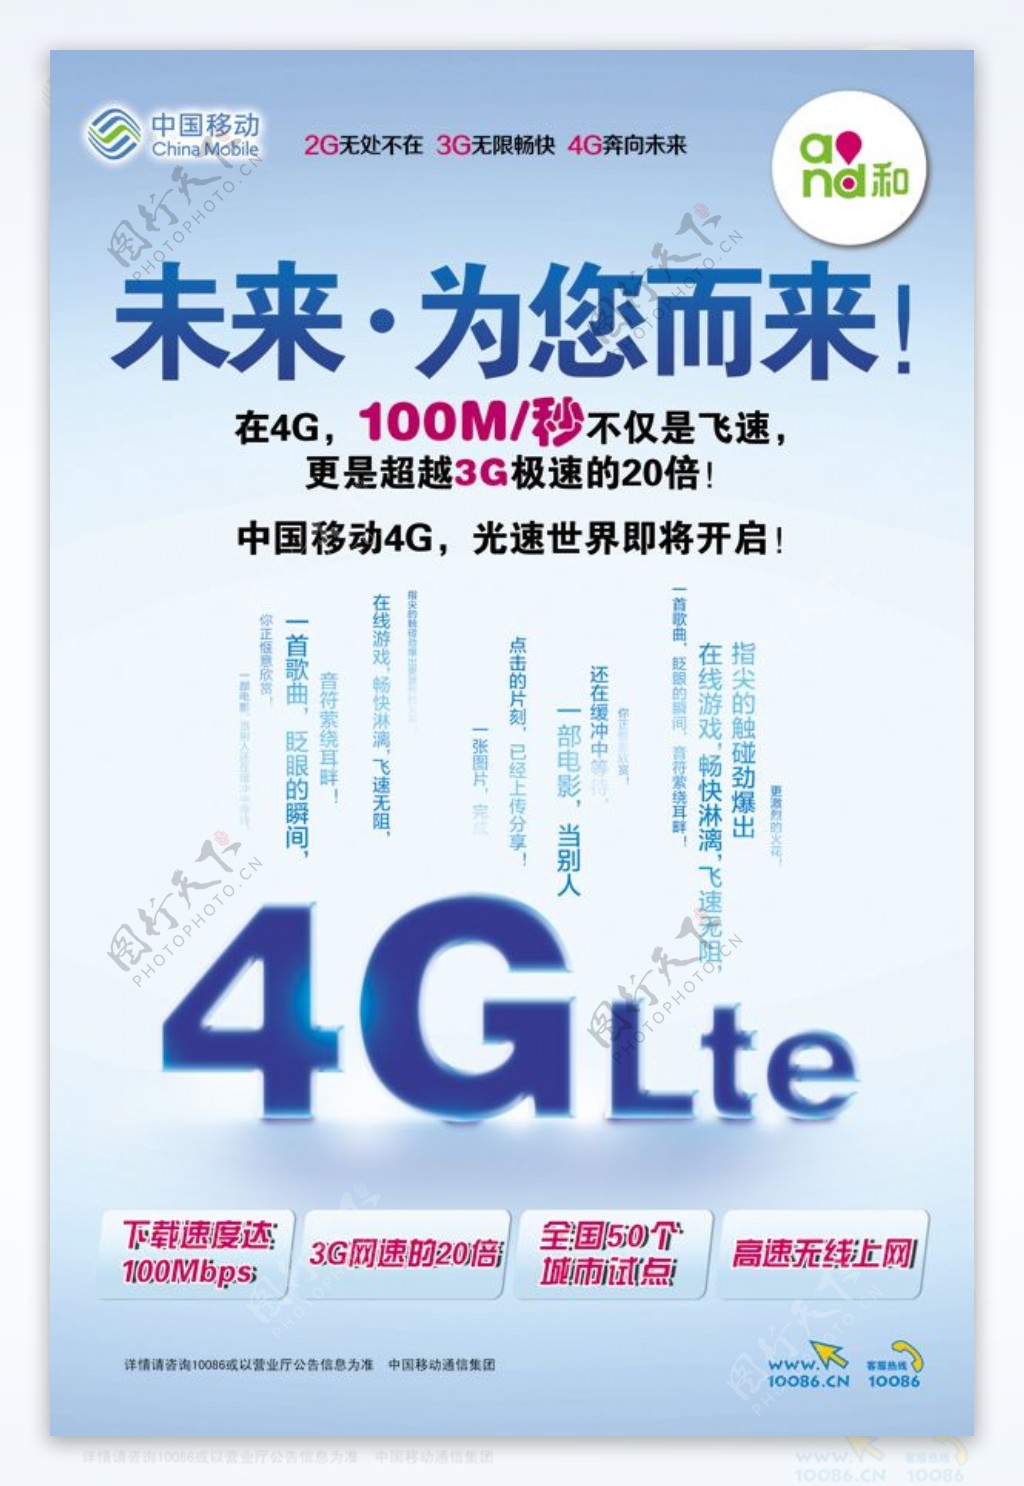 中国移动4G宣传海报PSD素材